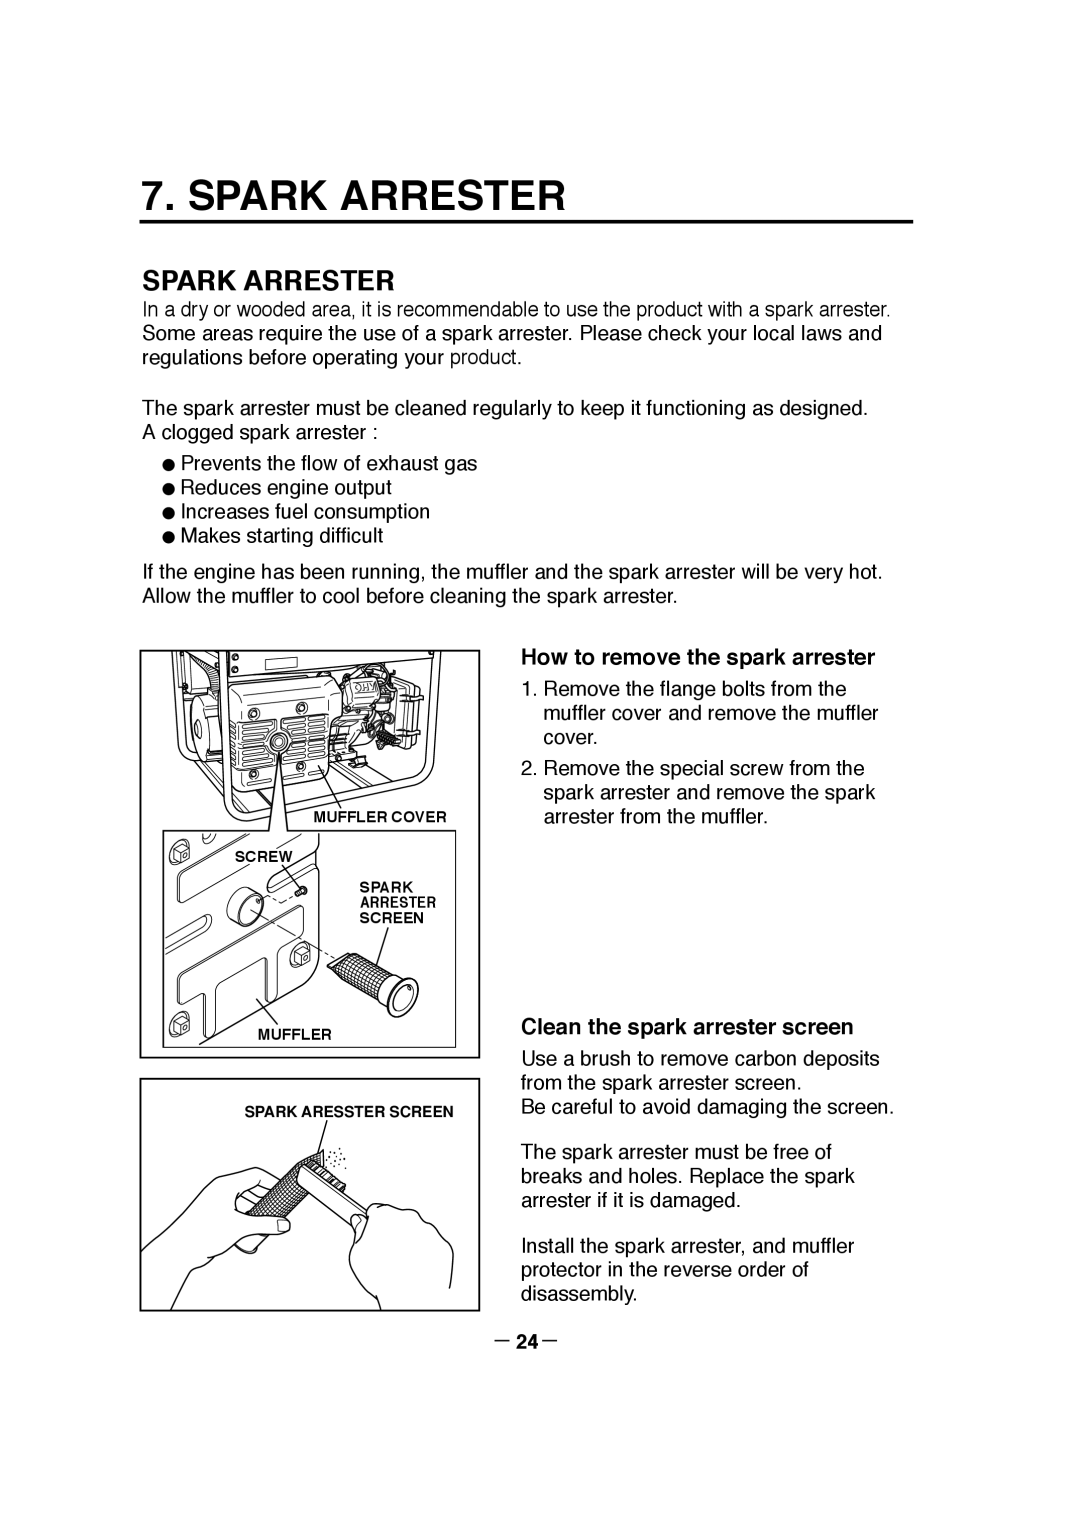 Makita G7301R, G7300R manuel dutilisation Spark Arrester, How to remove the spark arrester, Clean the spark arrester screen 